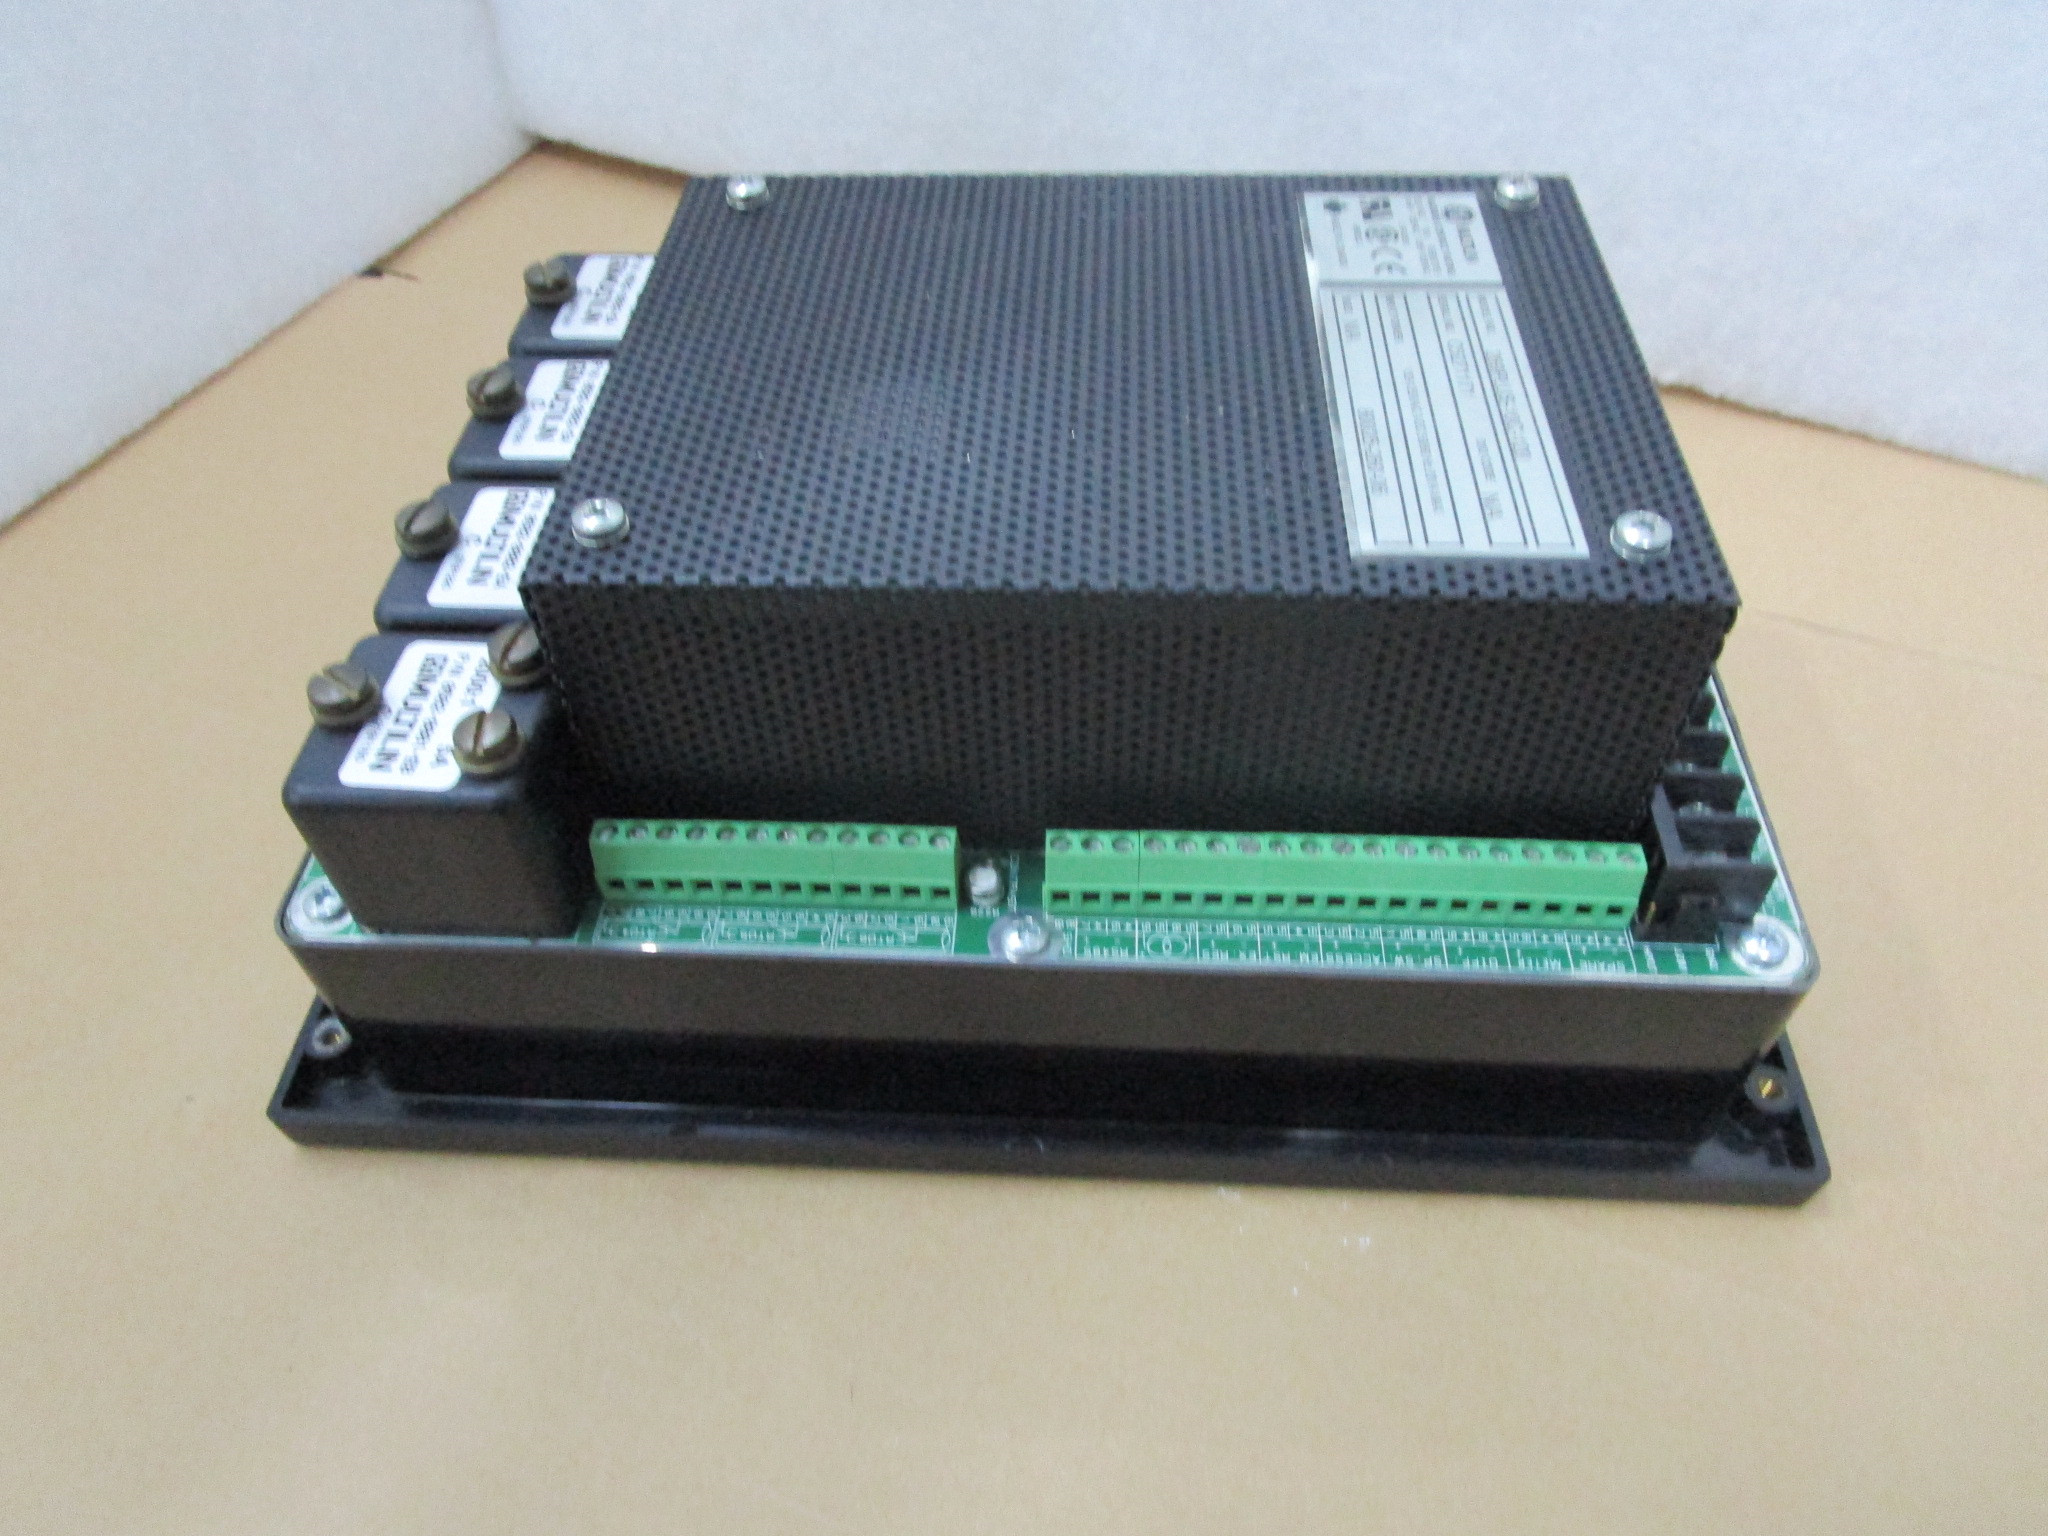 مزیت قیمت پردازنده AB 1756-L64 ControlLogix Logix5564 با حافظه کاربری 16 مگابایت